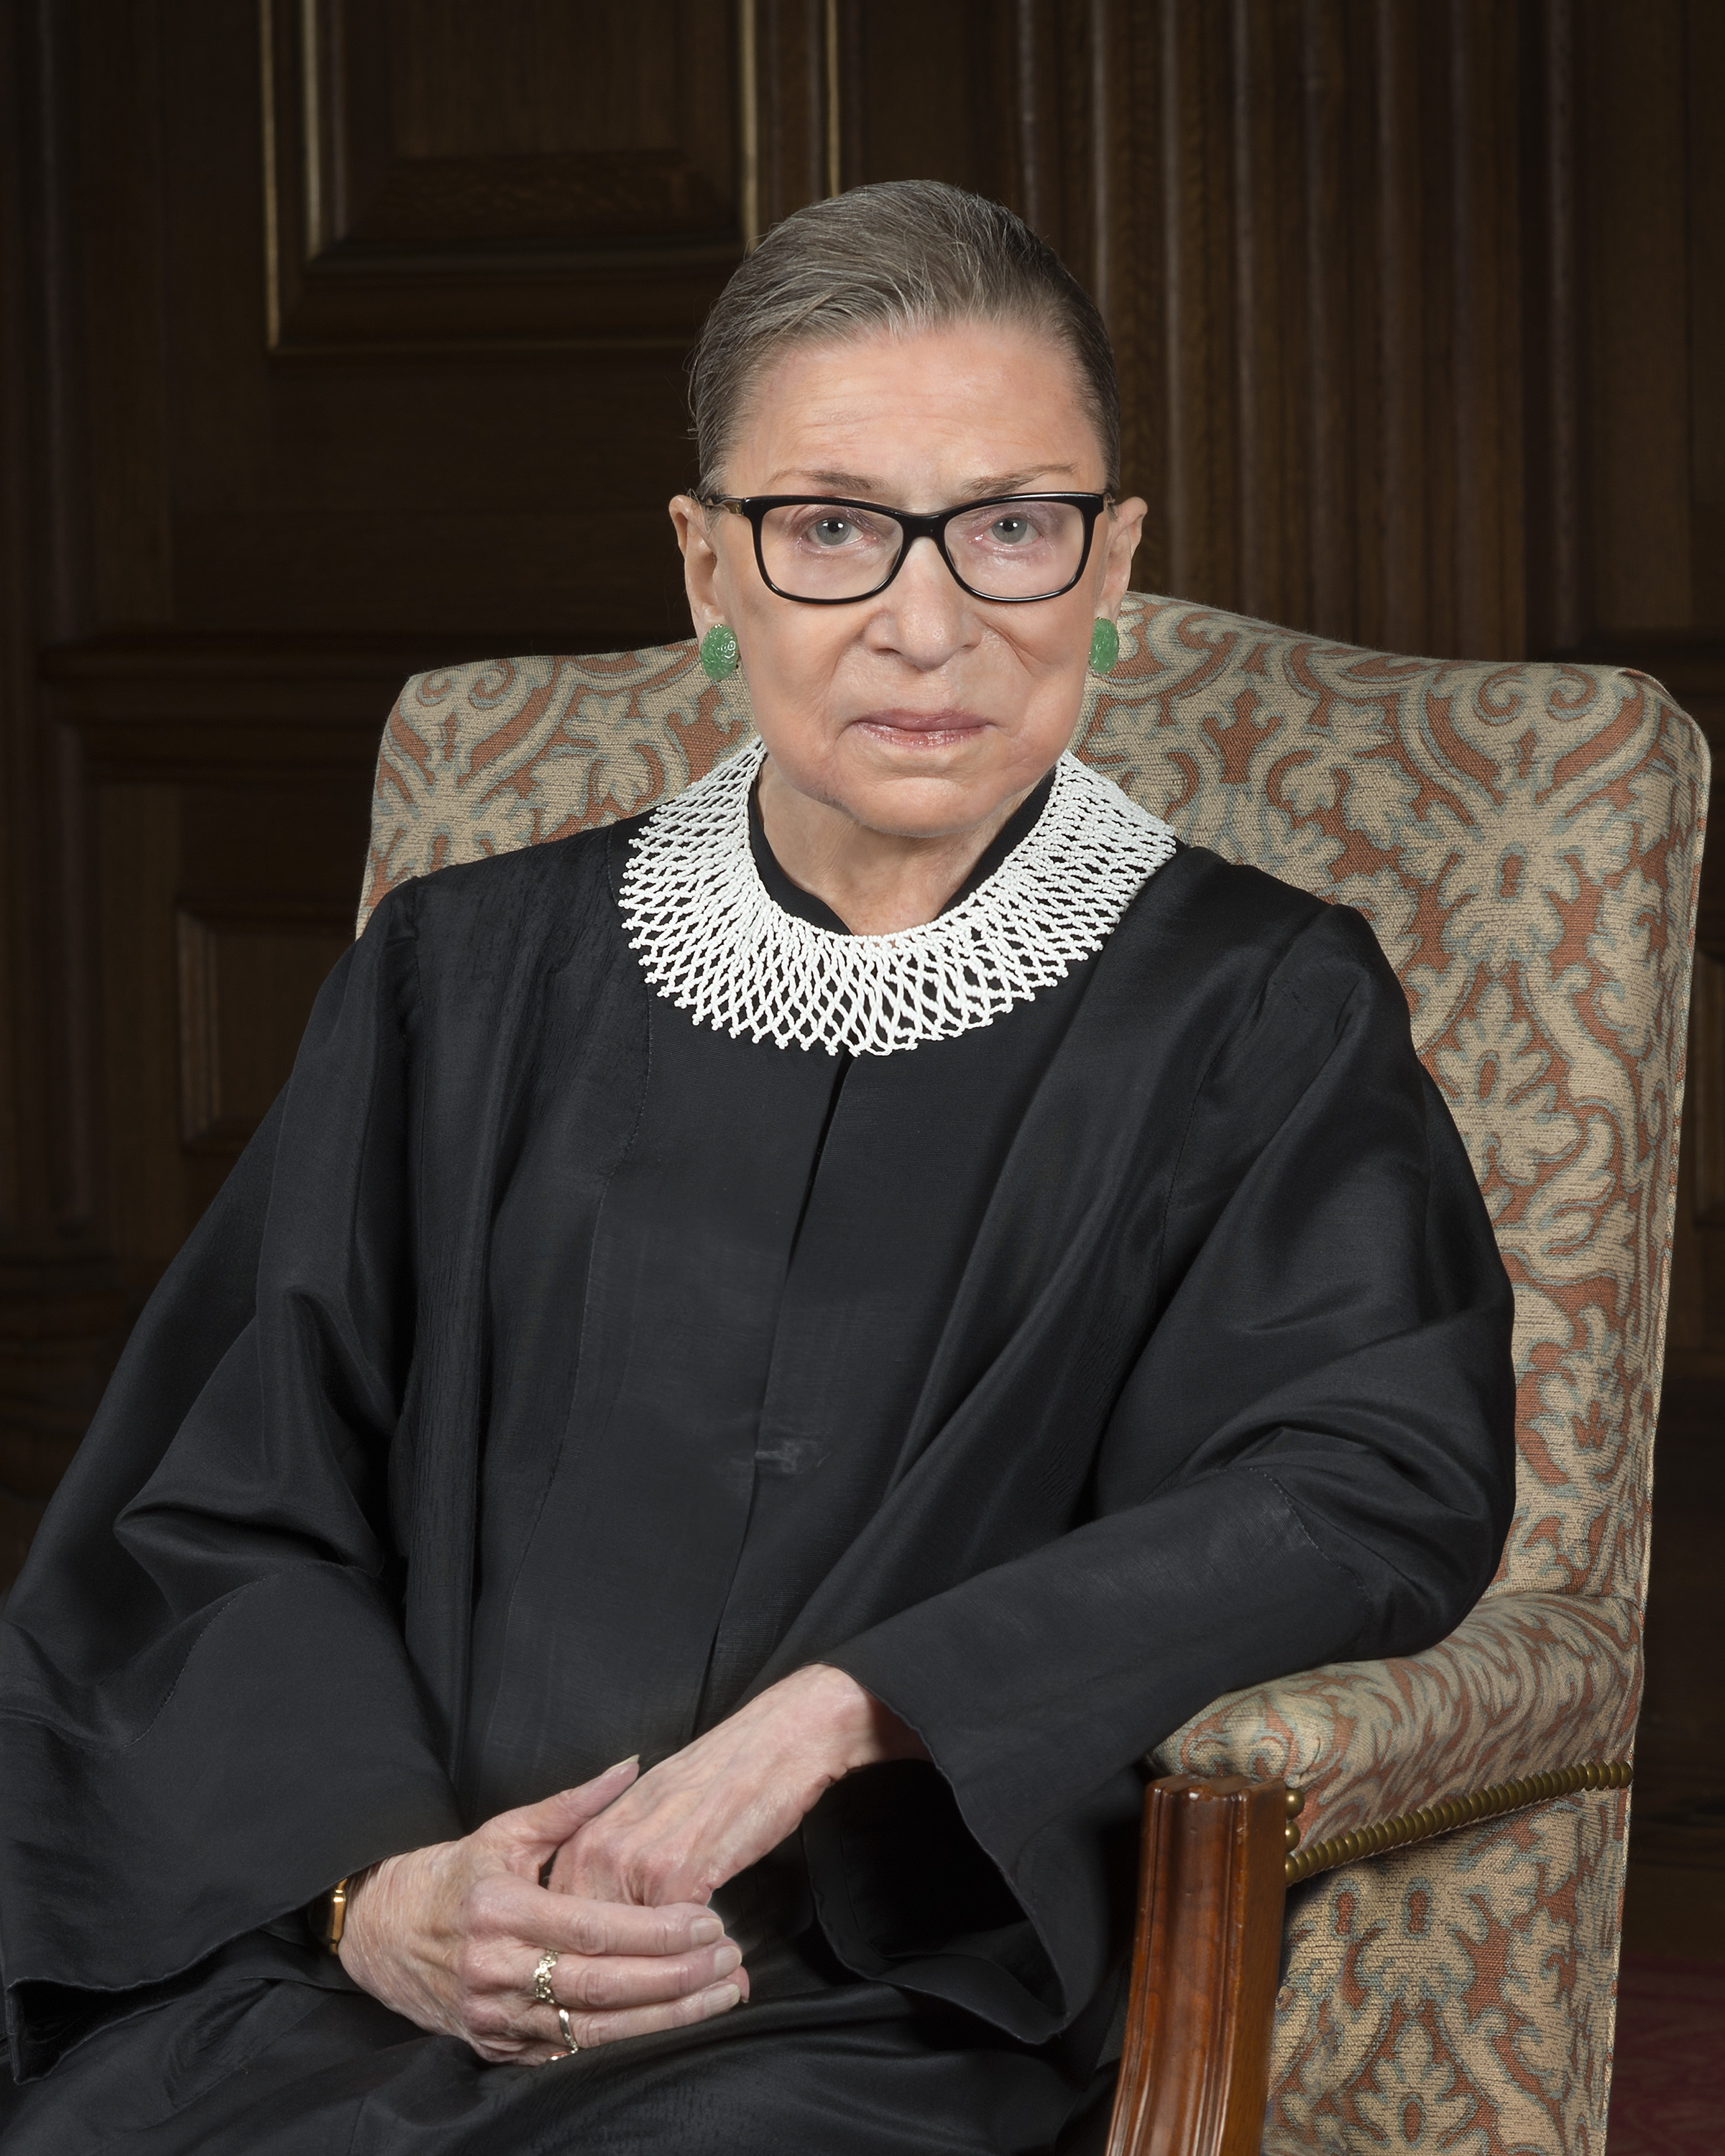 Justice Ruth Bader Ginsburg headshot